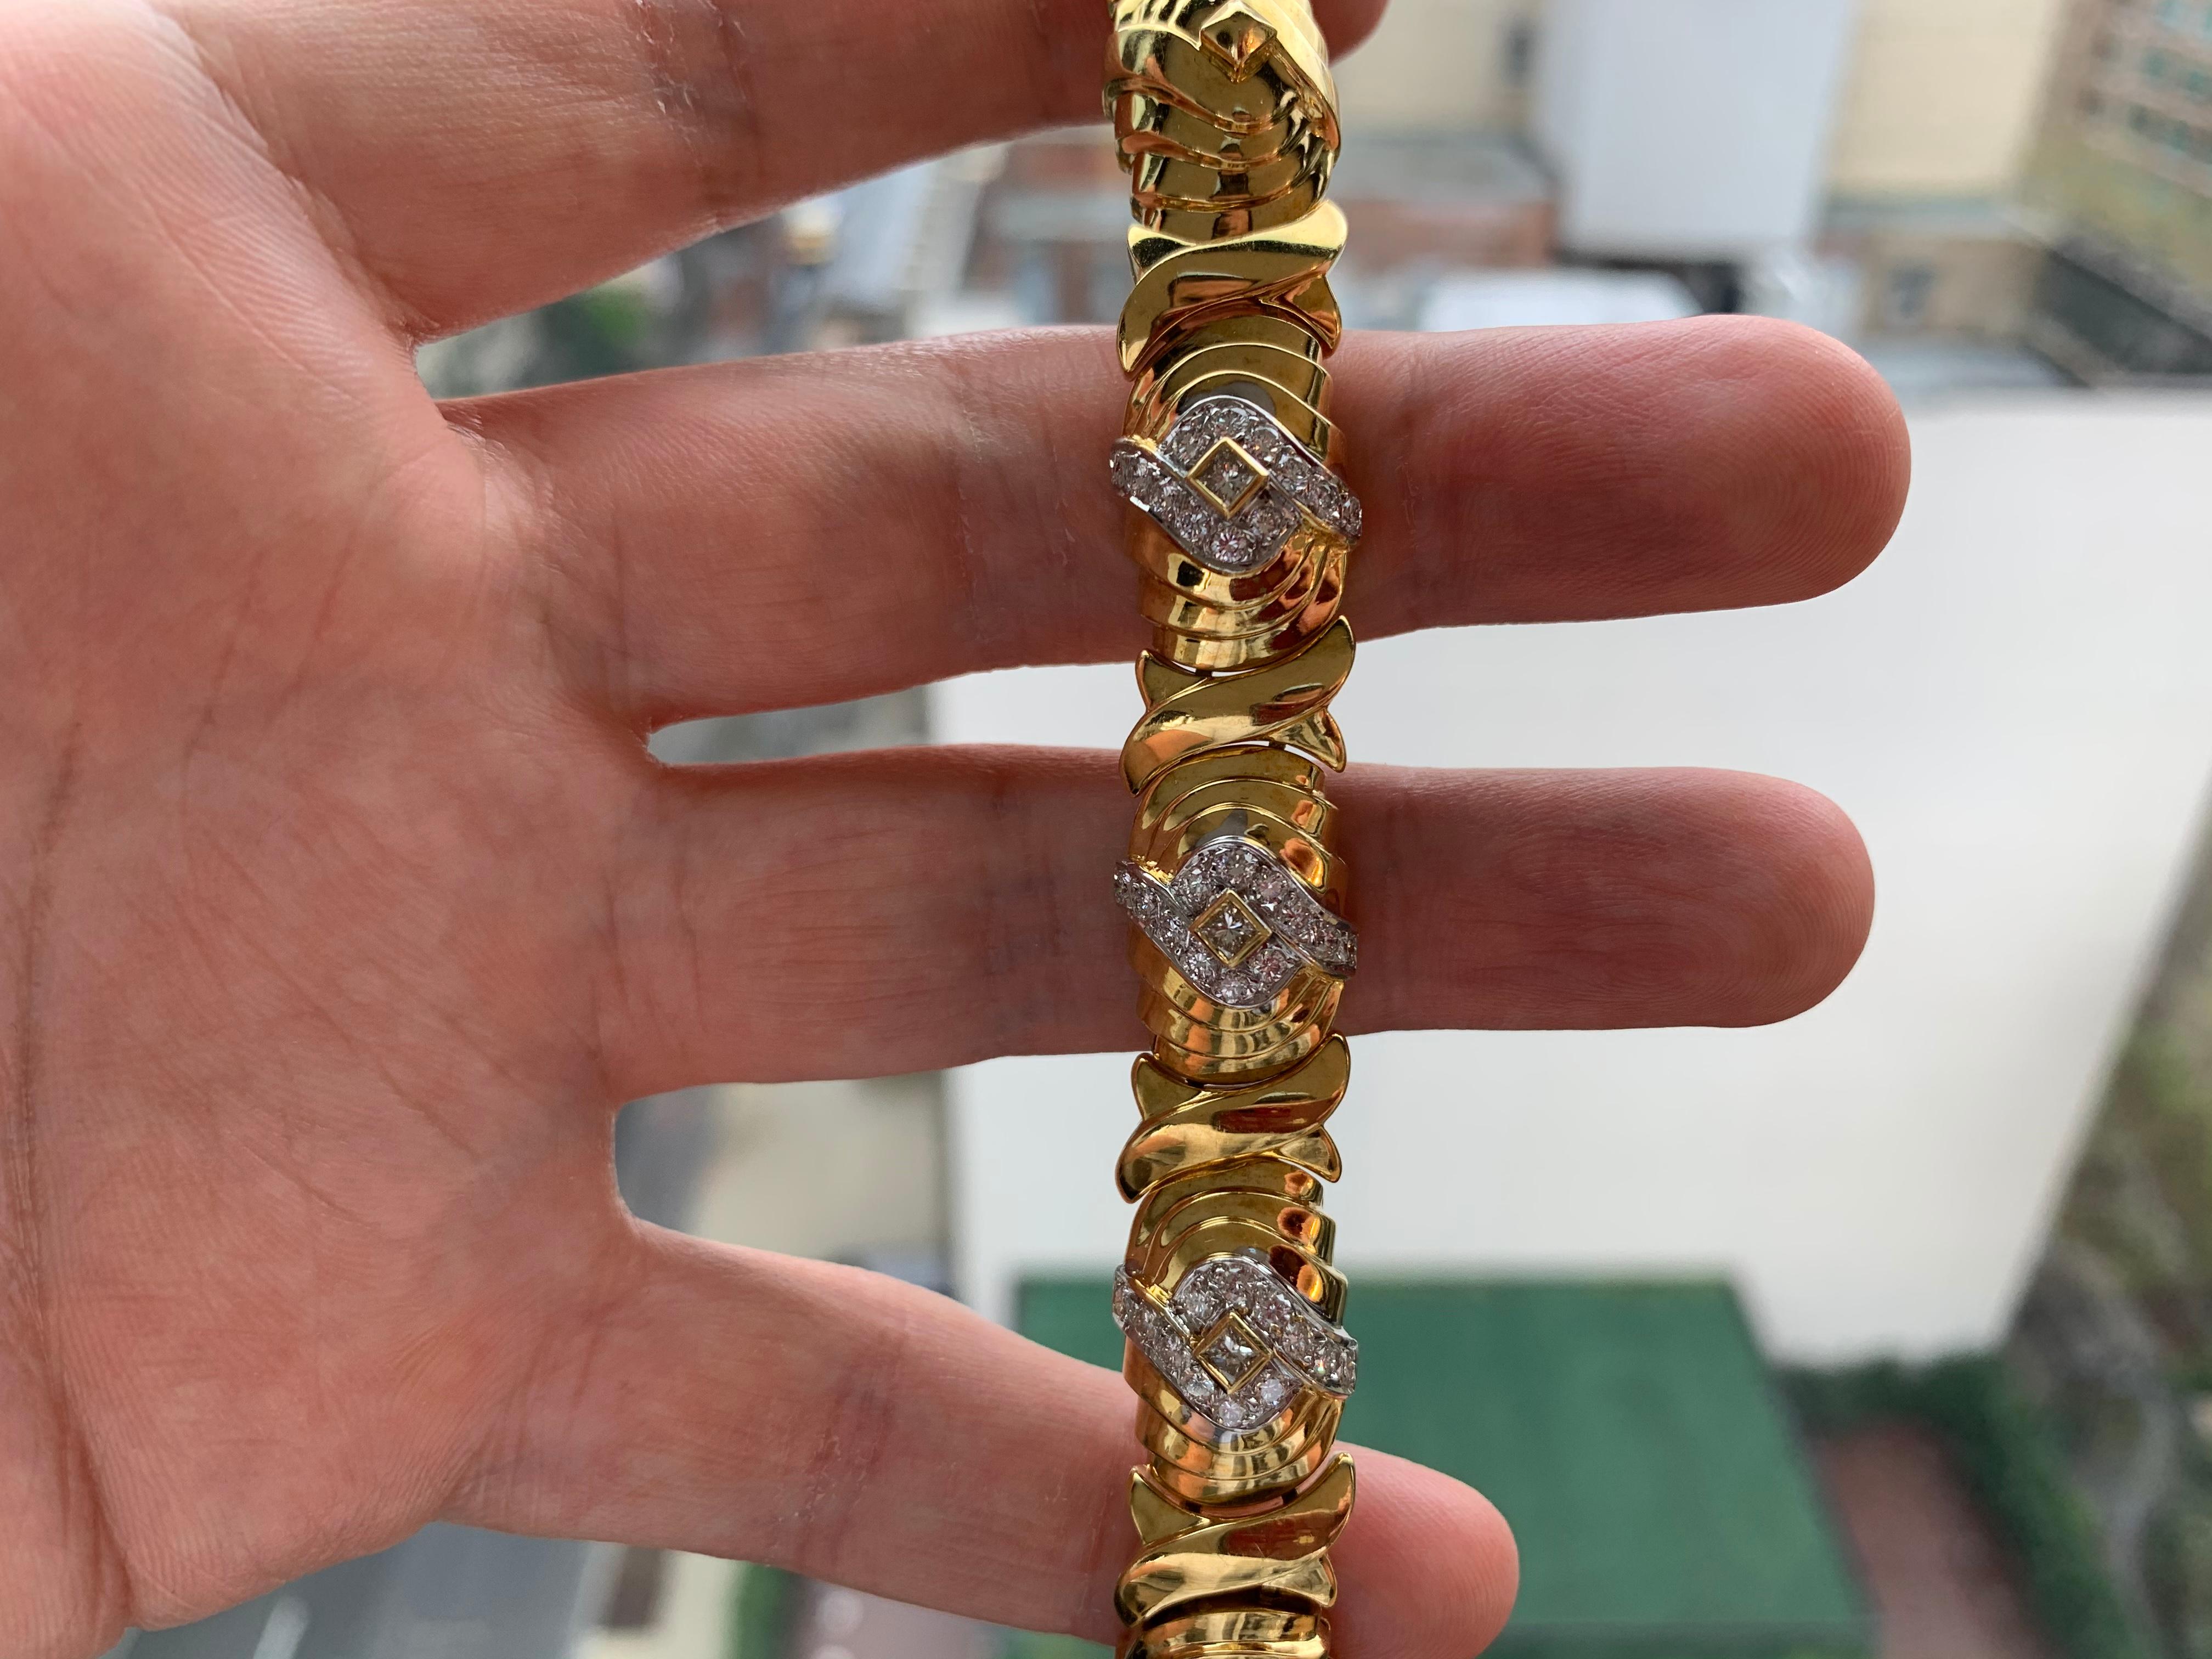 Bracelet en or et diamant pour homme par elan

Bracelet en or 18 carats avec diamants carrés 
Taille : 7 ½ pouces
Poids :  83,1 grammes

Fabriqué vers 1980